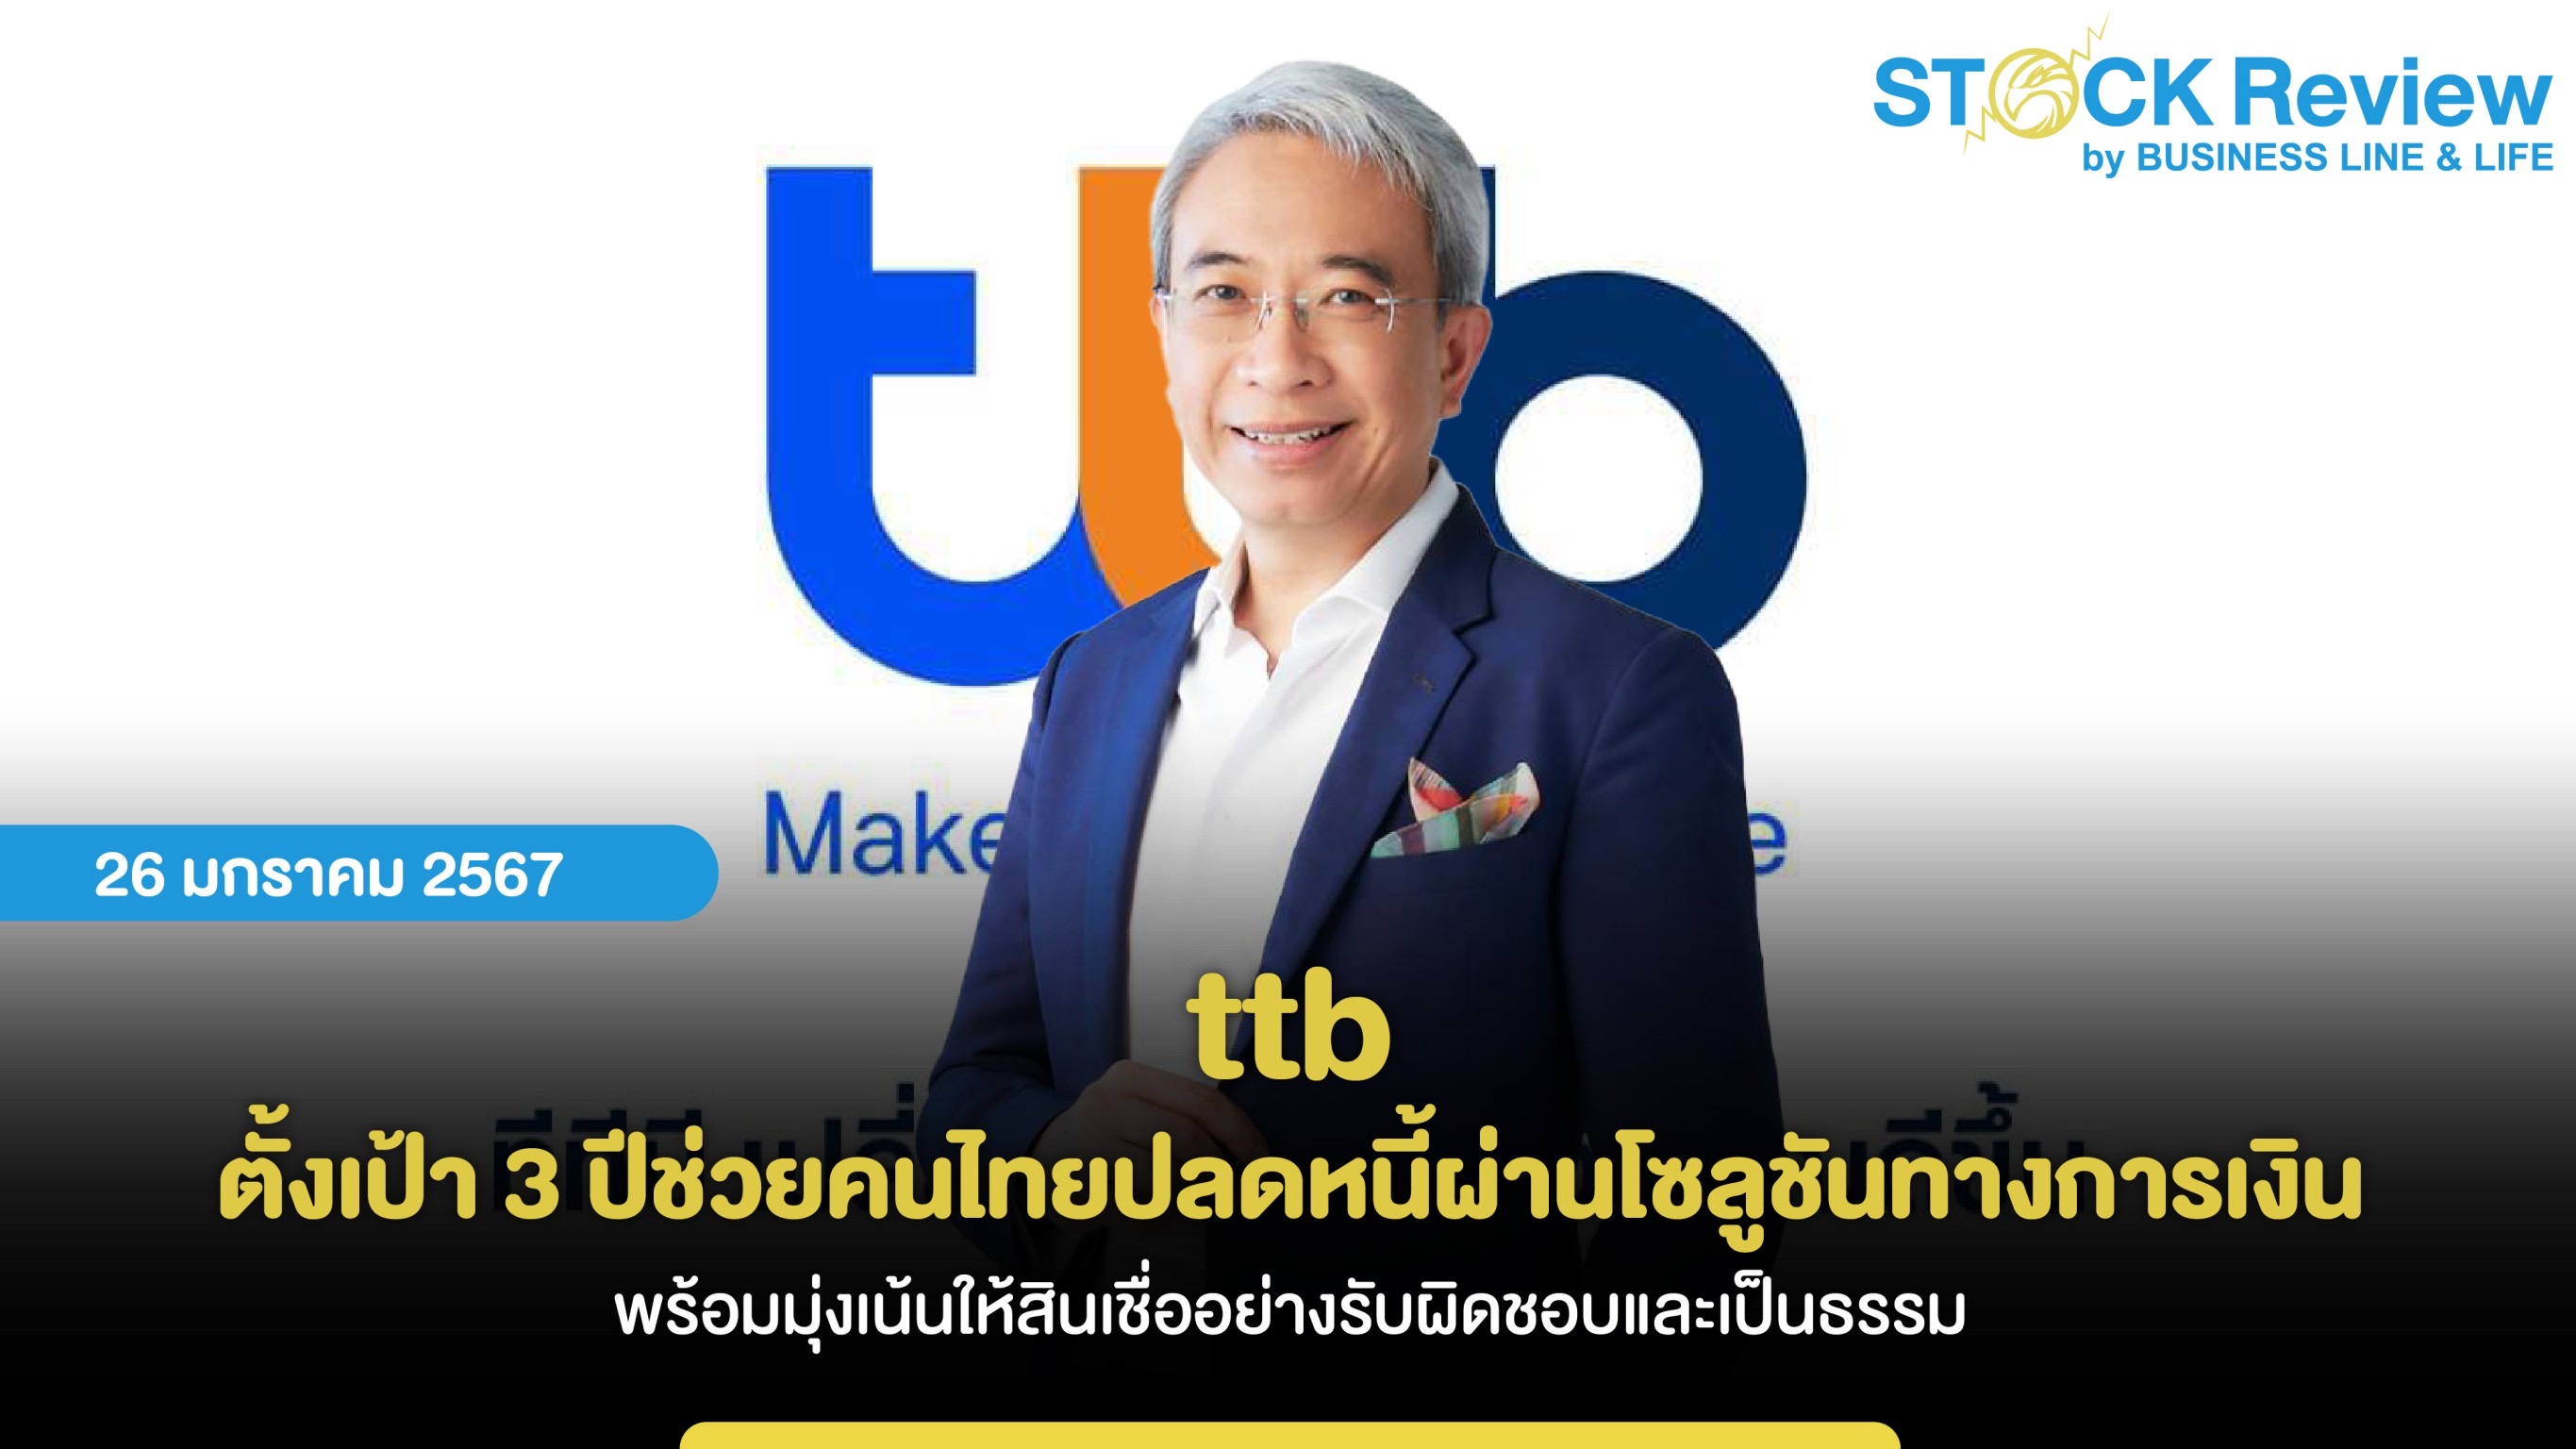 ttb ตั้งเป้า 3 ปีช่วยคนไทยปลดหนี้ผ่านโซลูชันทางการเงิน พร้อมมุ่งเน้นให้สินเชื่ออย่างรับผิดชอบและเป็นธรรม